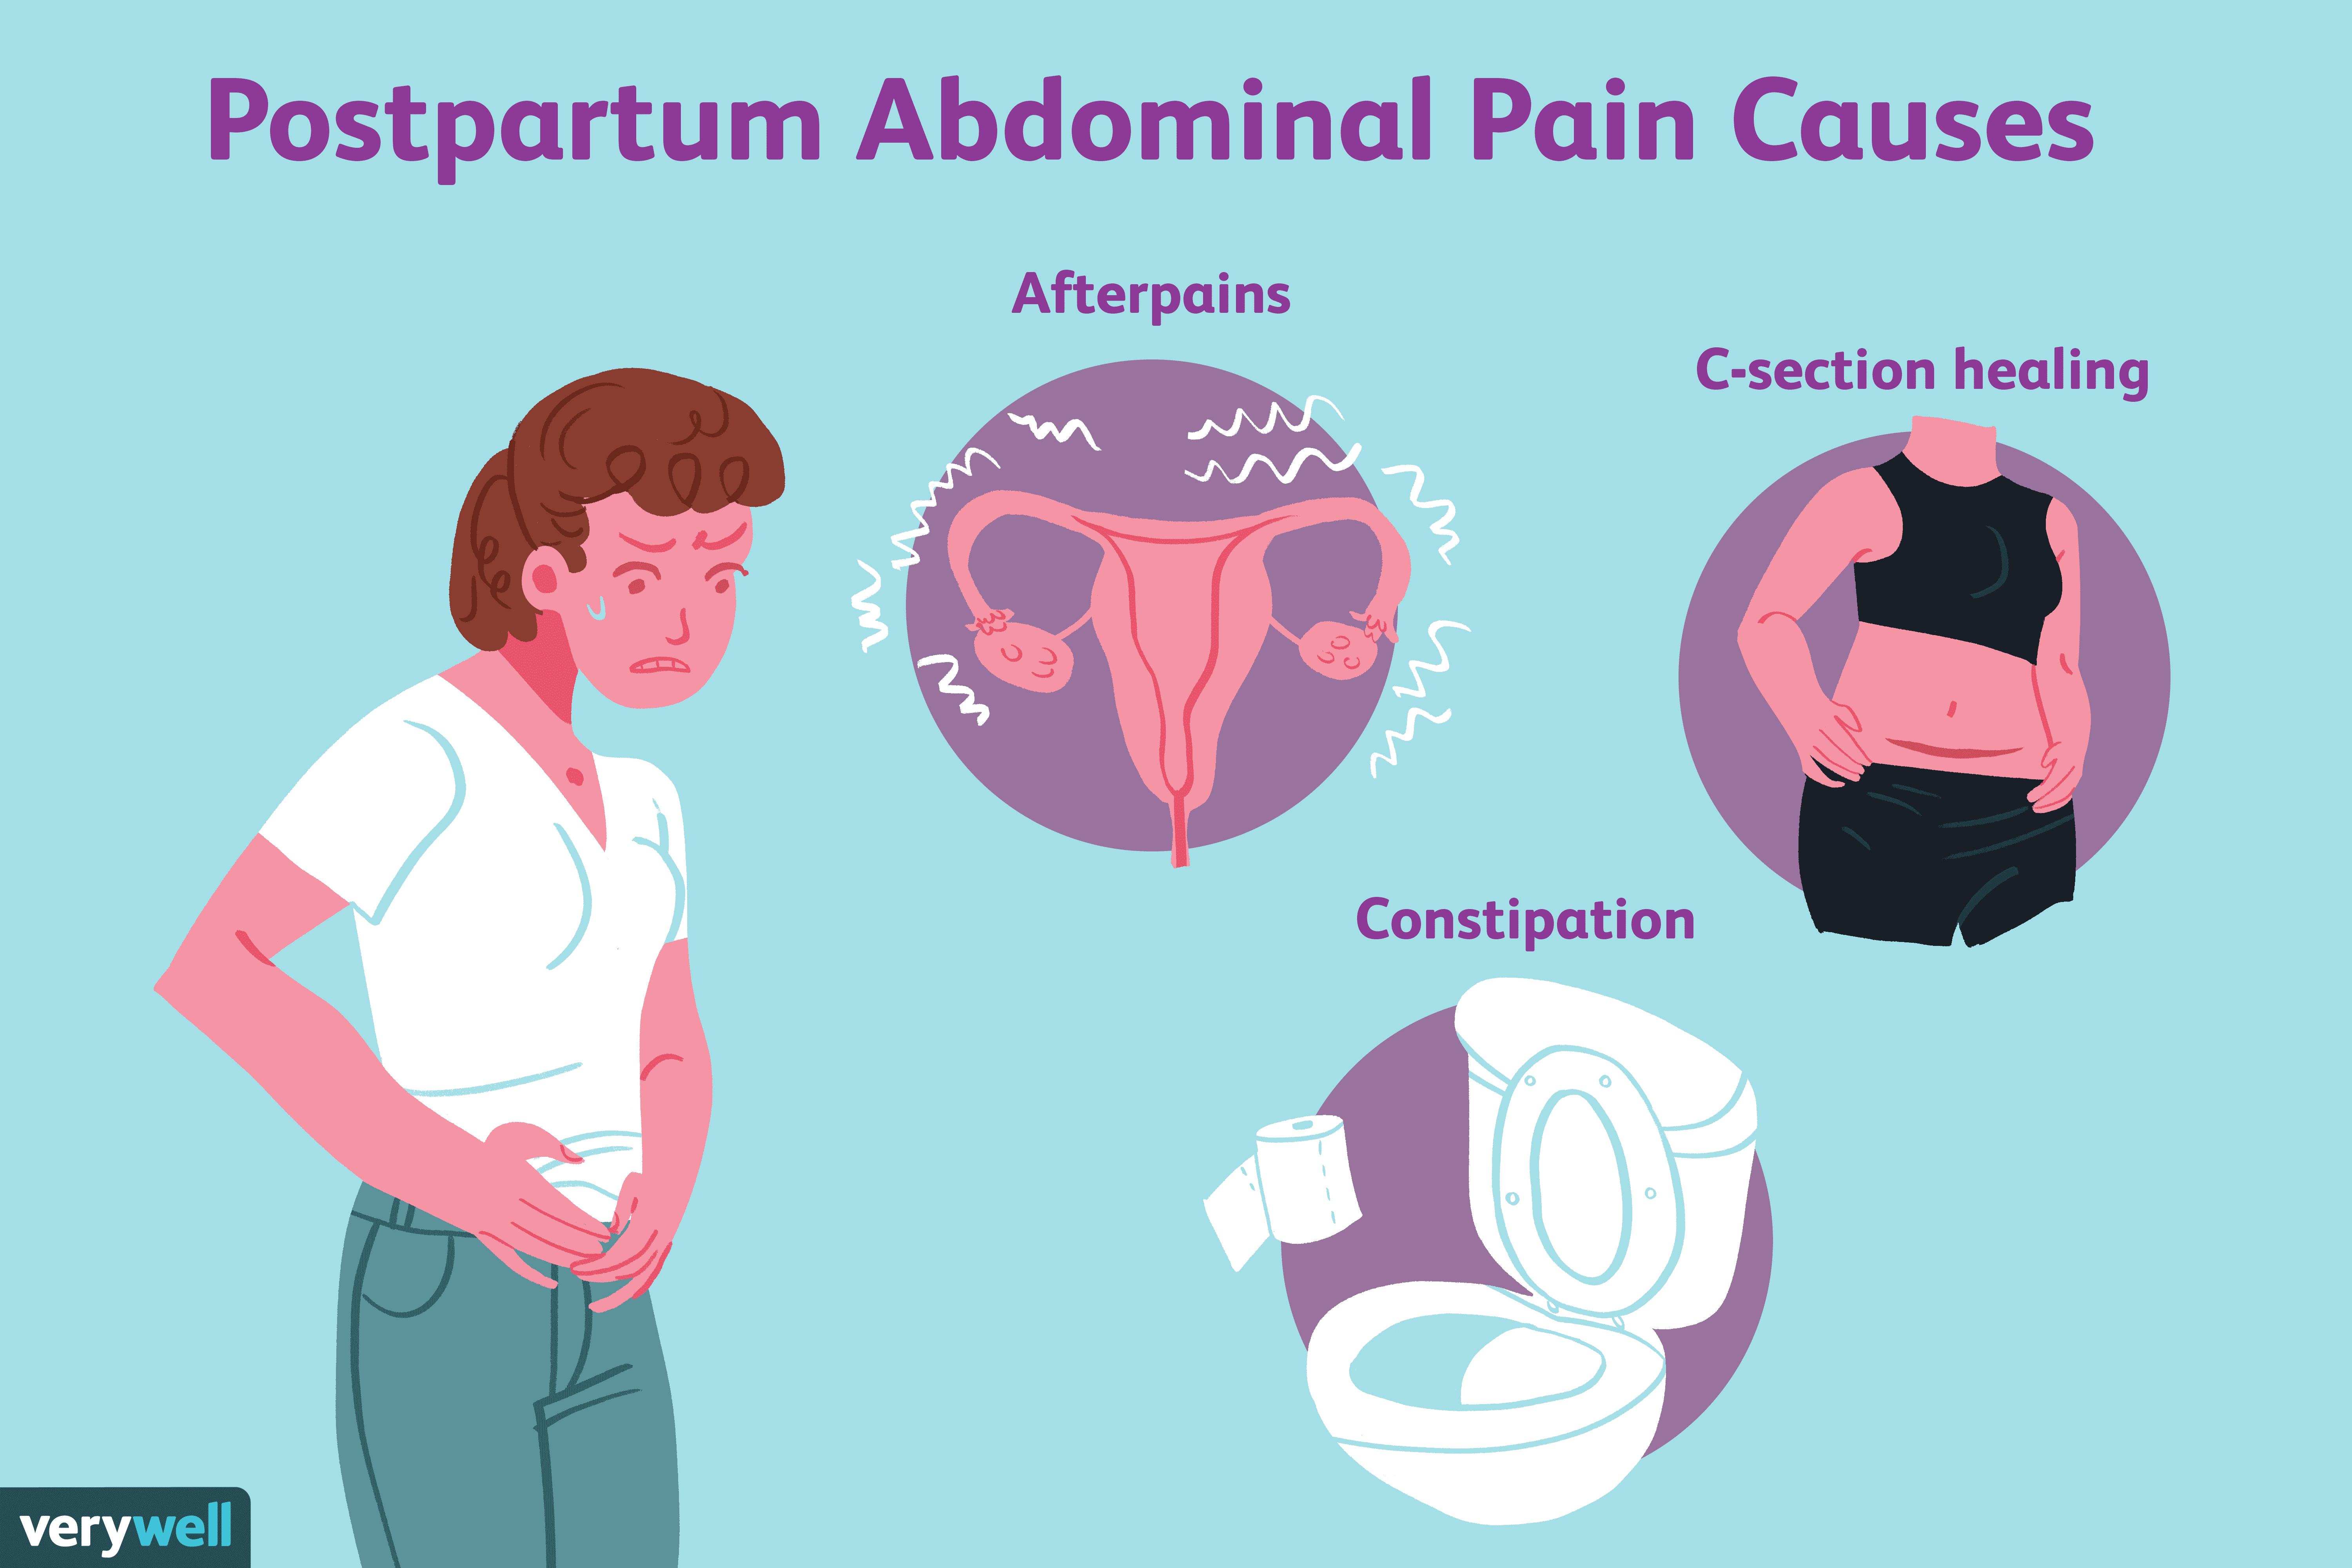 Causes of Postpartum Abdominal Pain